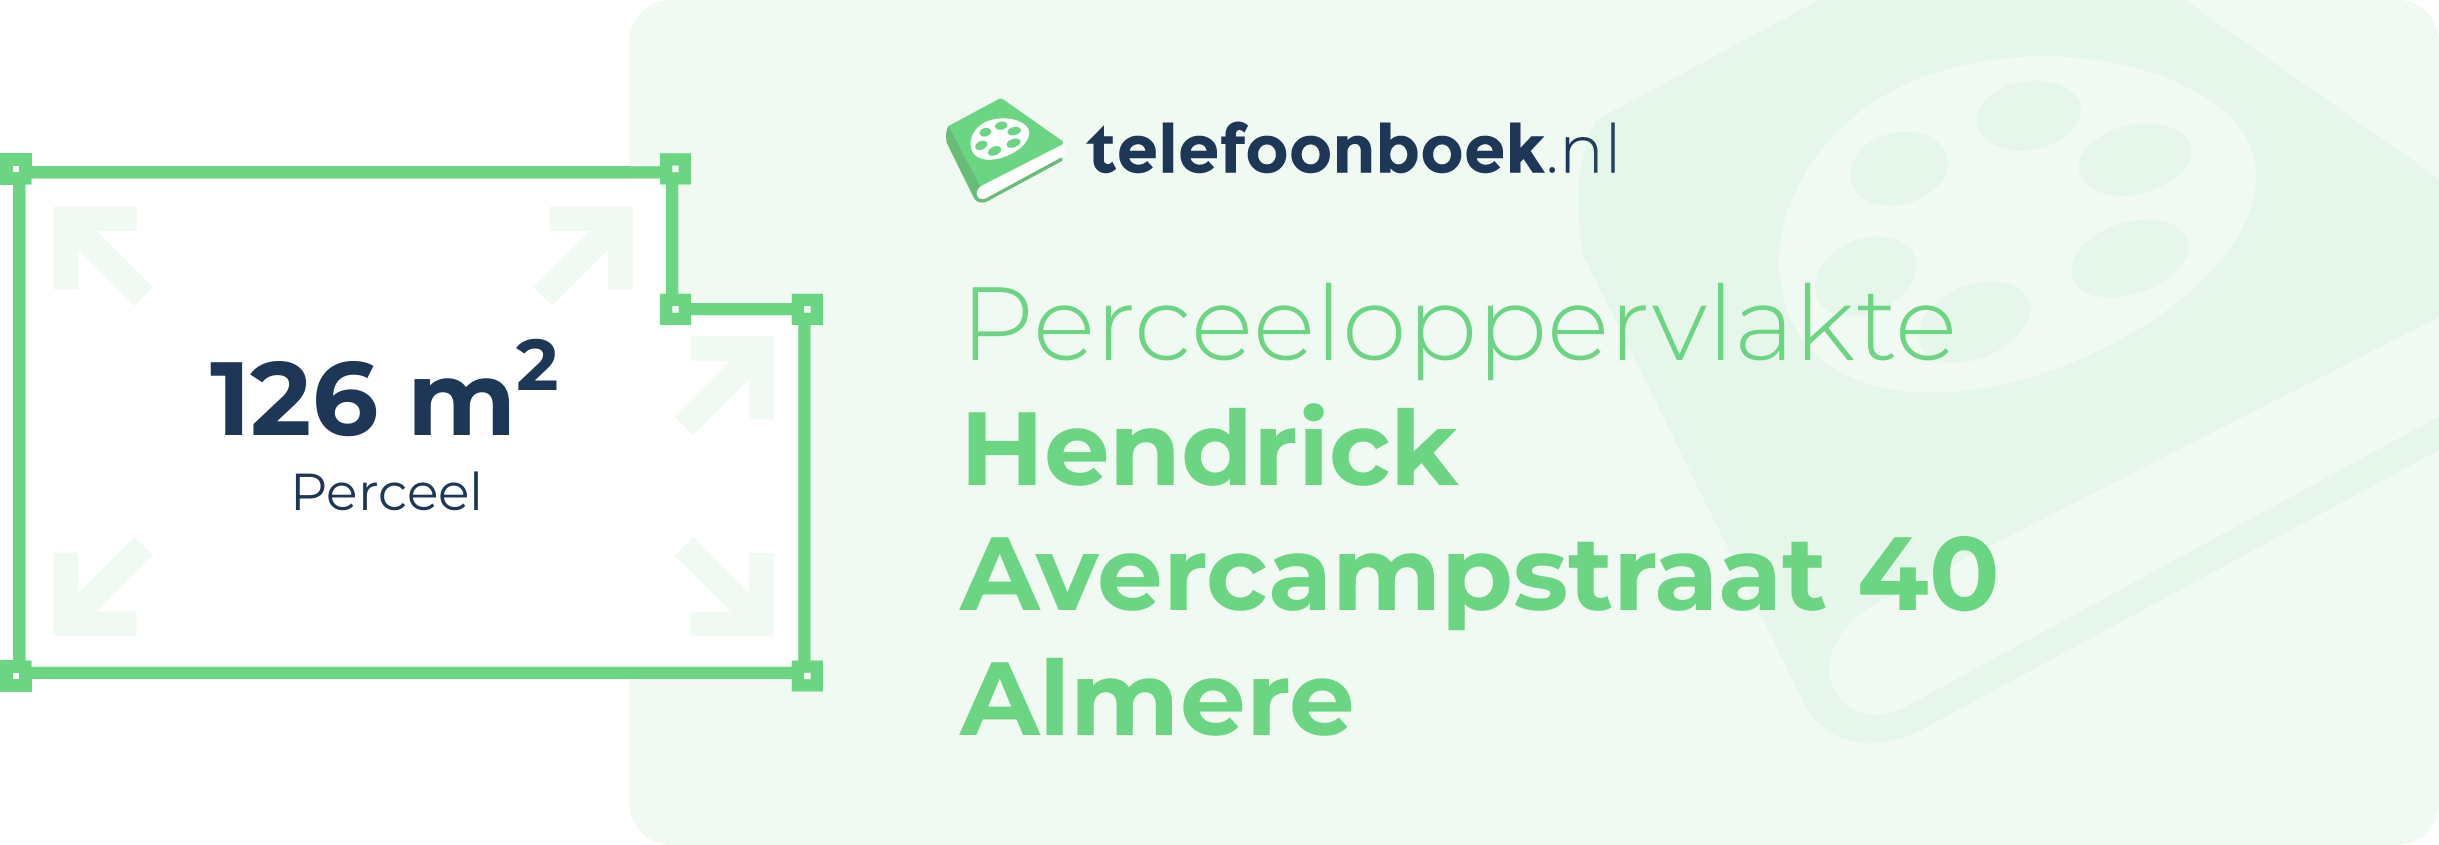 Perceeloppervlakte Hendrick Avercampstraat 40 Almere